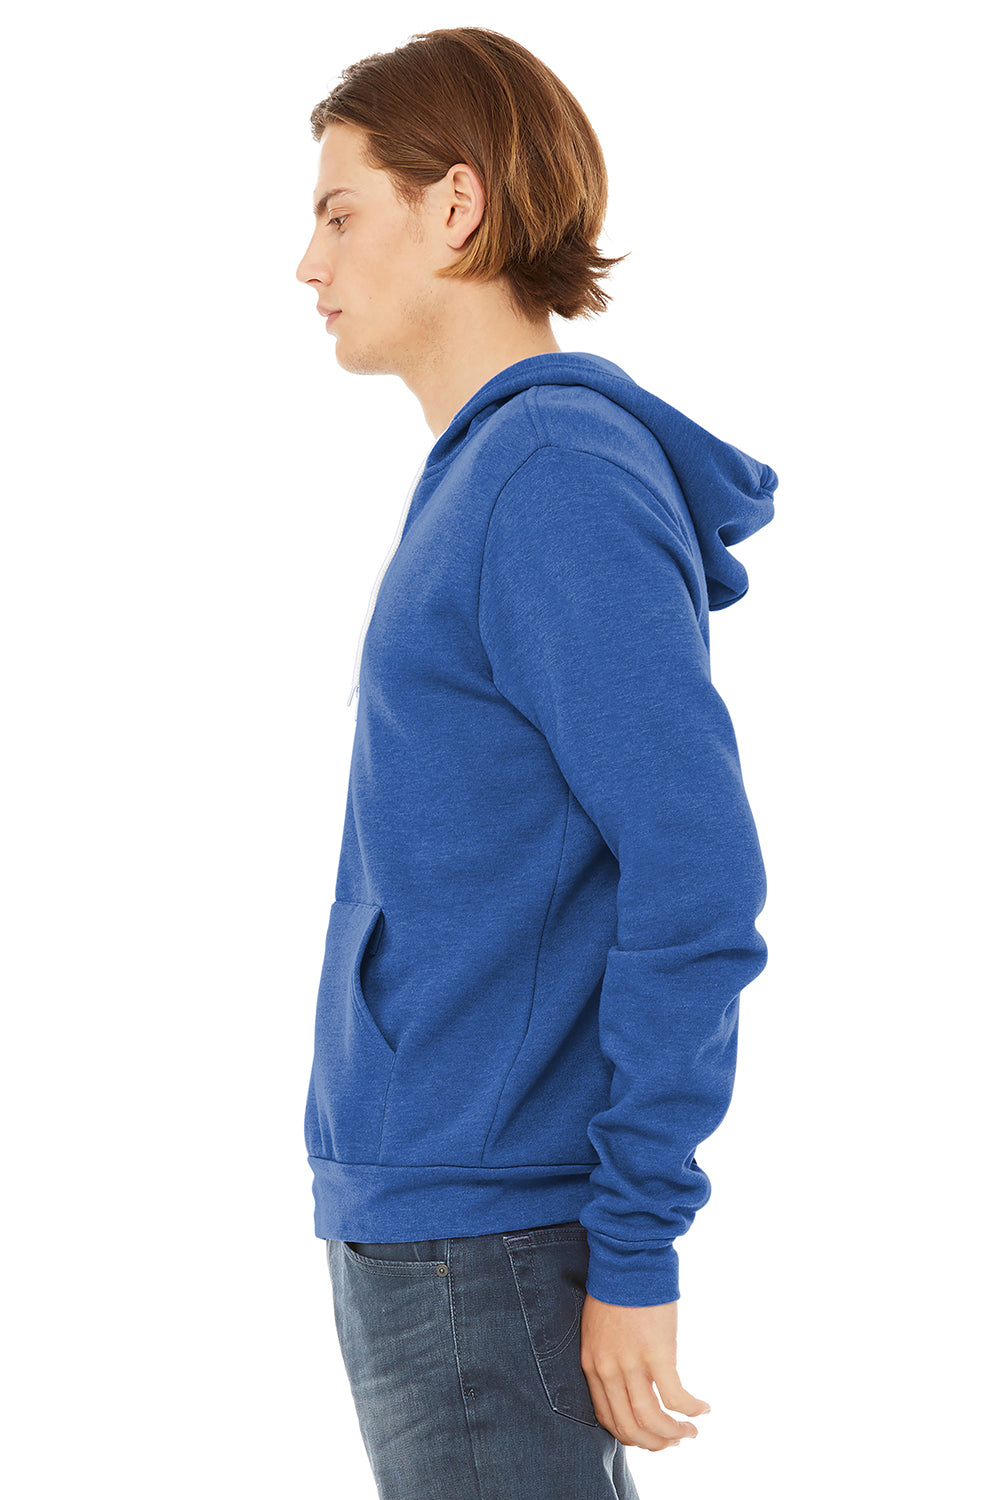 Bella + Canvas BC3739/3739 Mens Fleece Full Zip Hooded Sweatshirt Hoodie Heather True Royal Blue Model Side